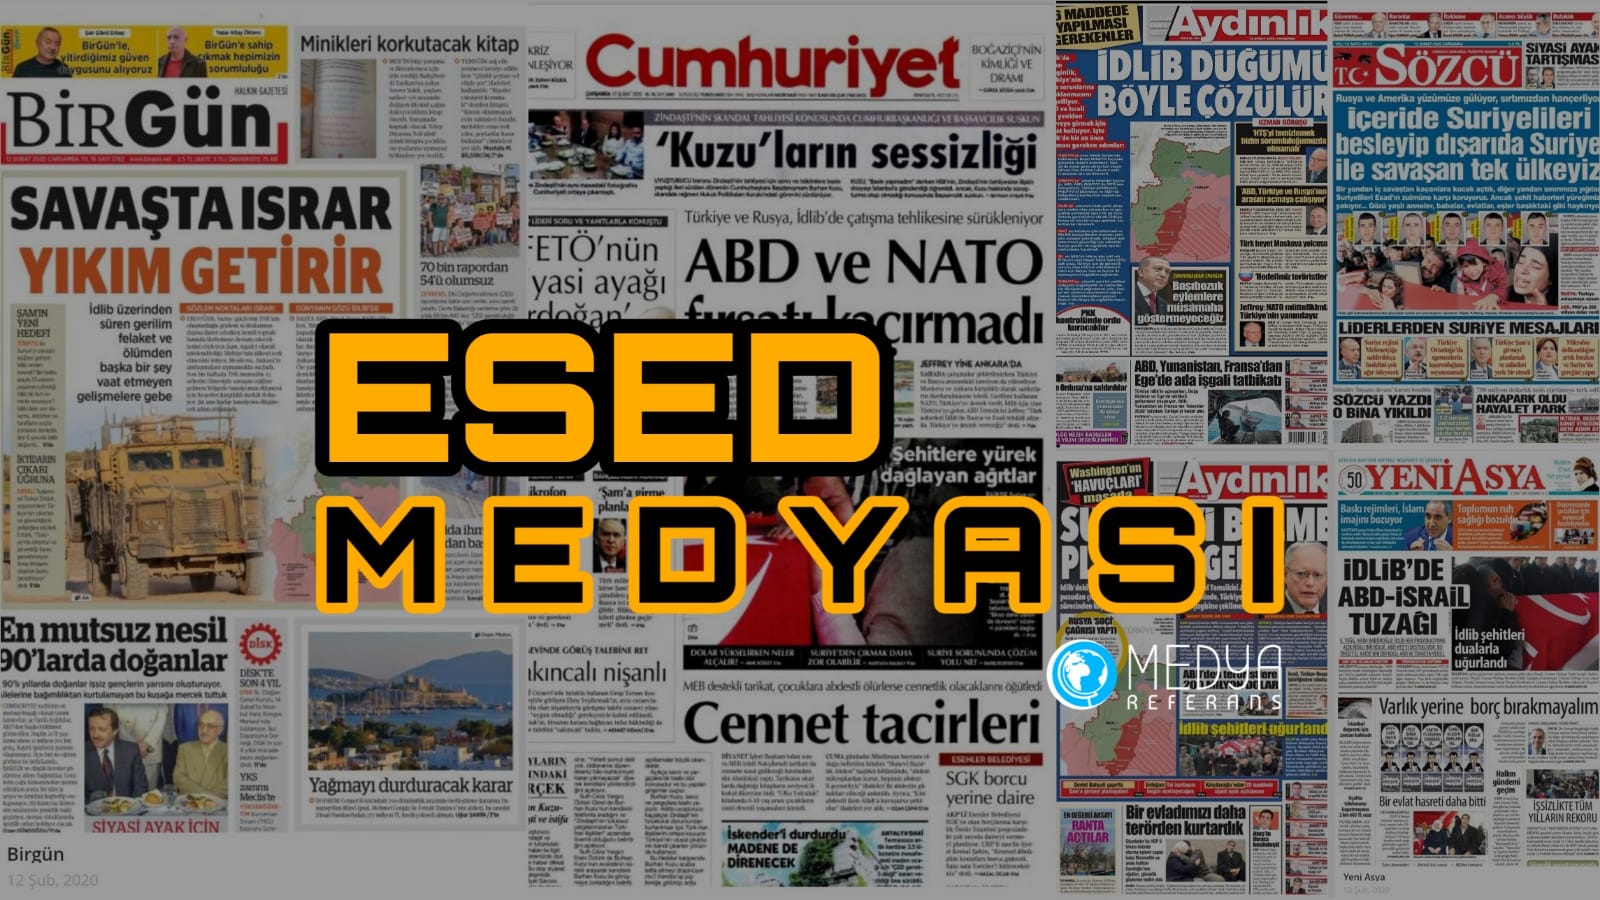 Türkiye'ye Karşı Esed'i Destekliyorlar